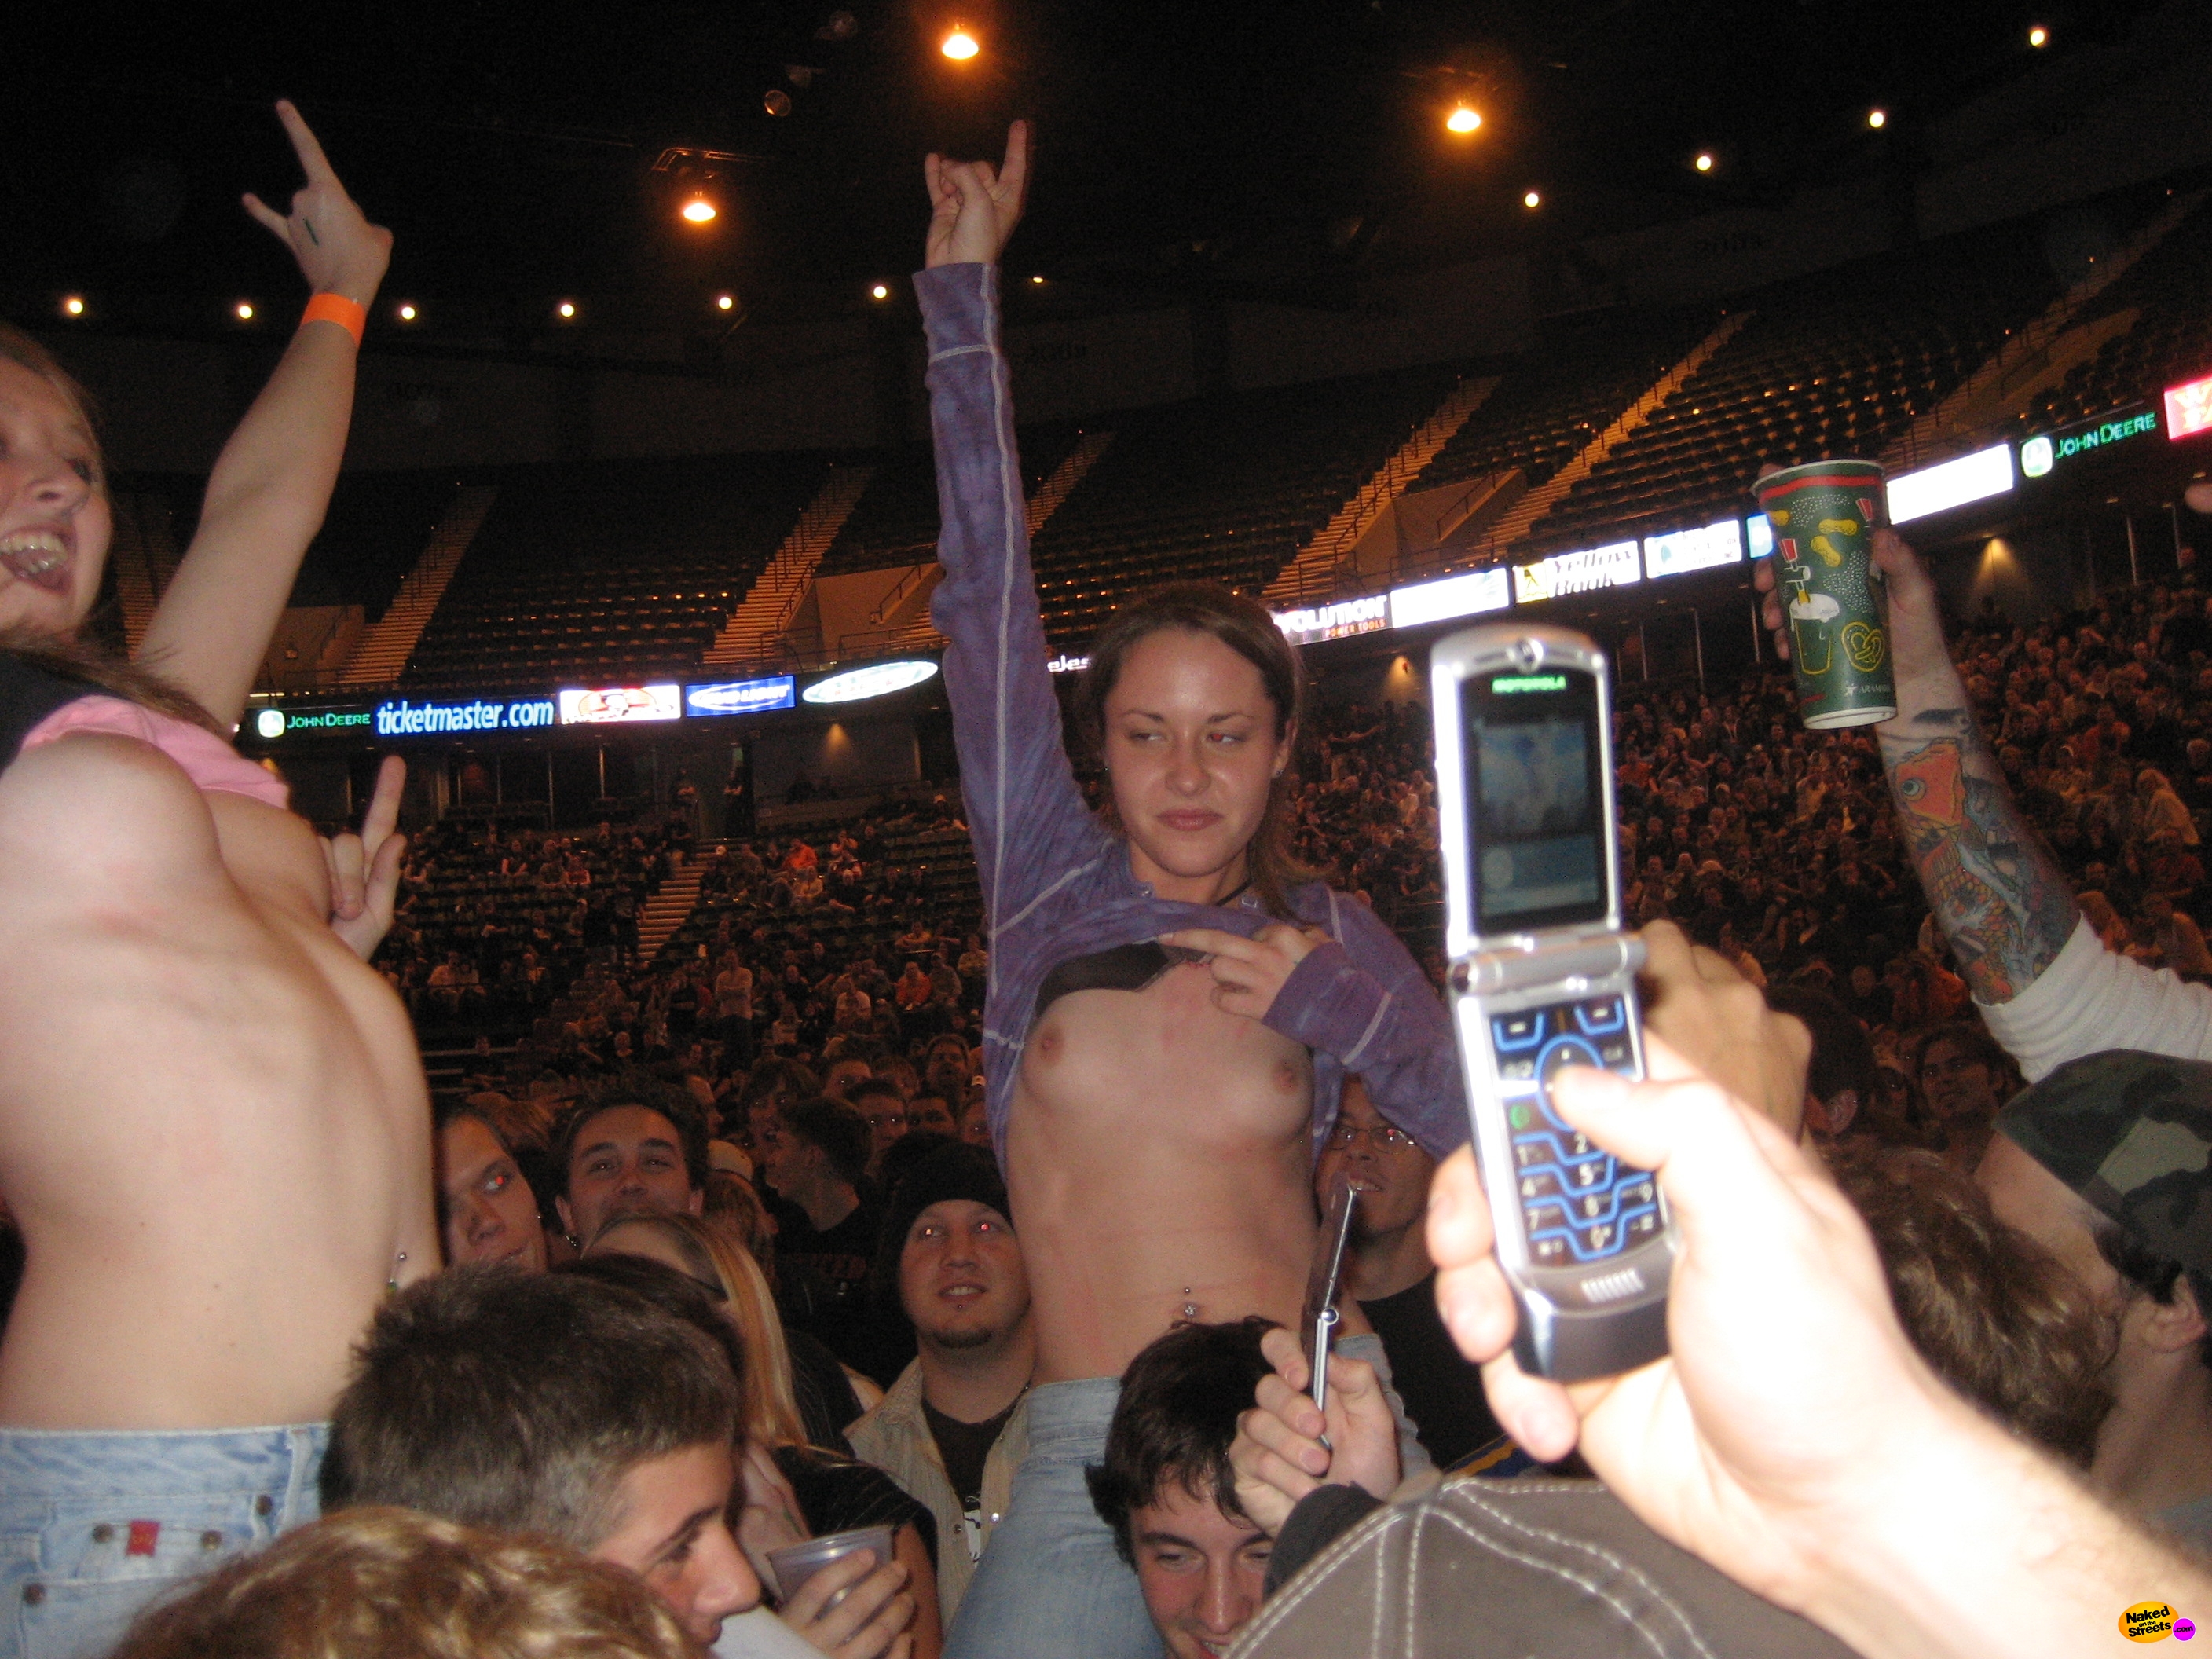 Teen sluts flashing boobs at concert